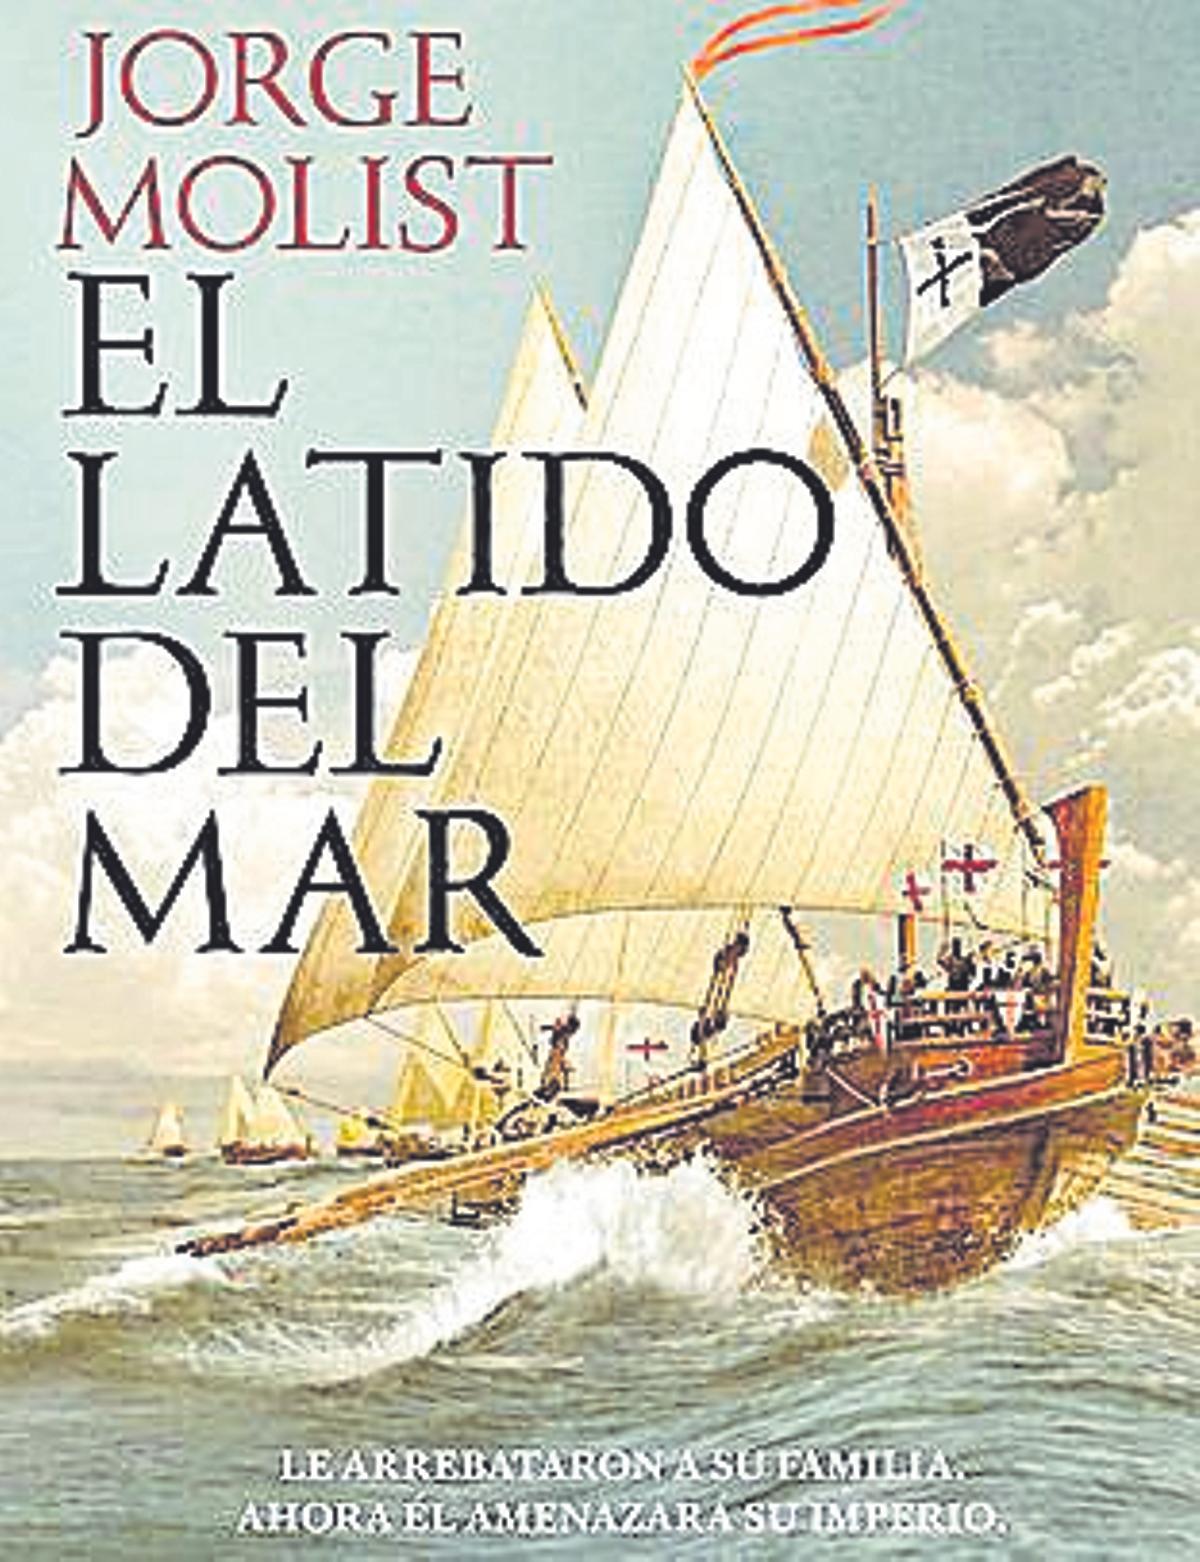 Jorge Molist. El latido del mar. Editorial Planeta 624 páginas / 22,90 euros